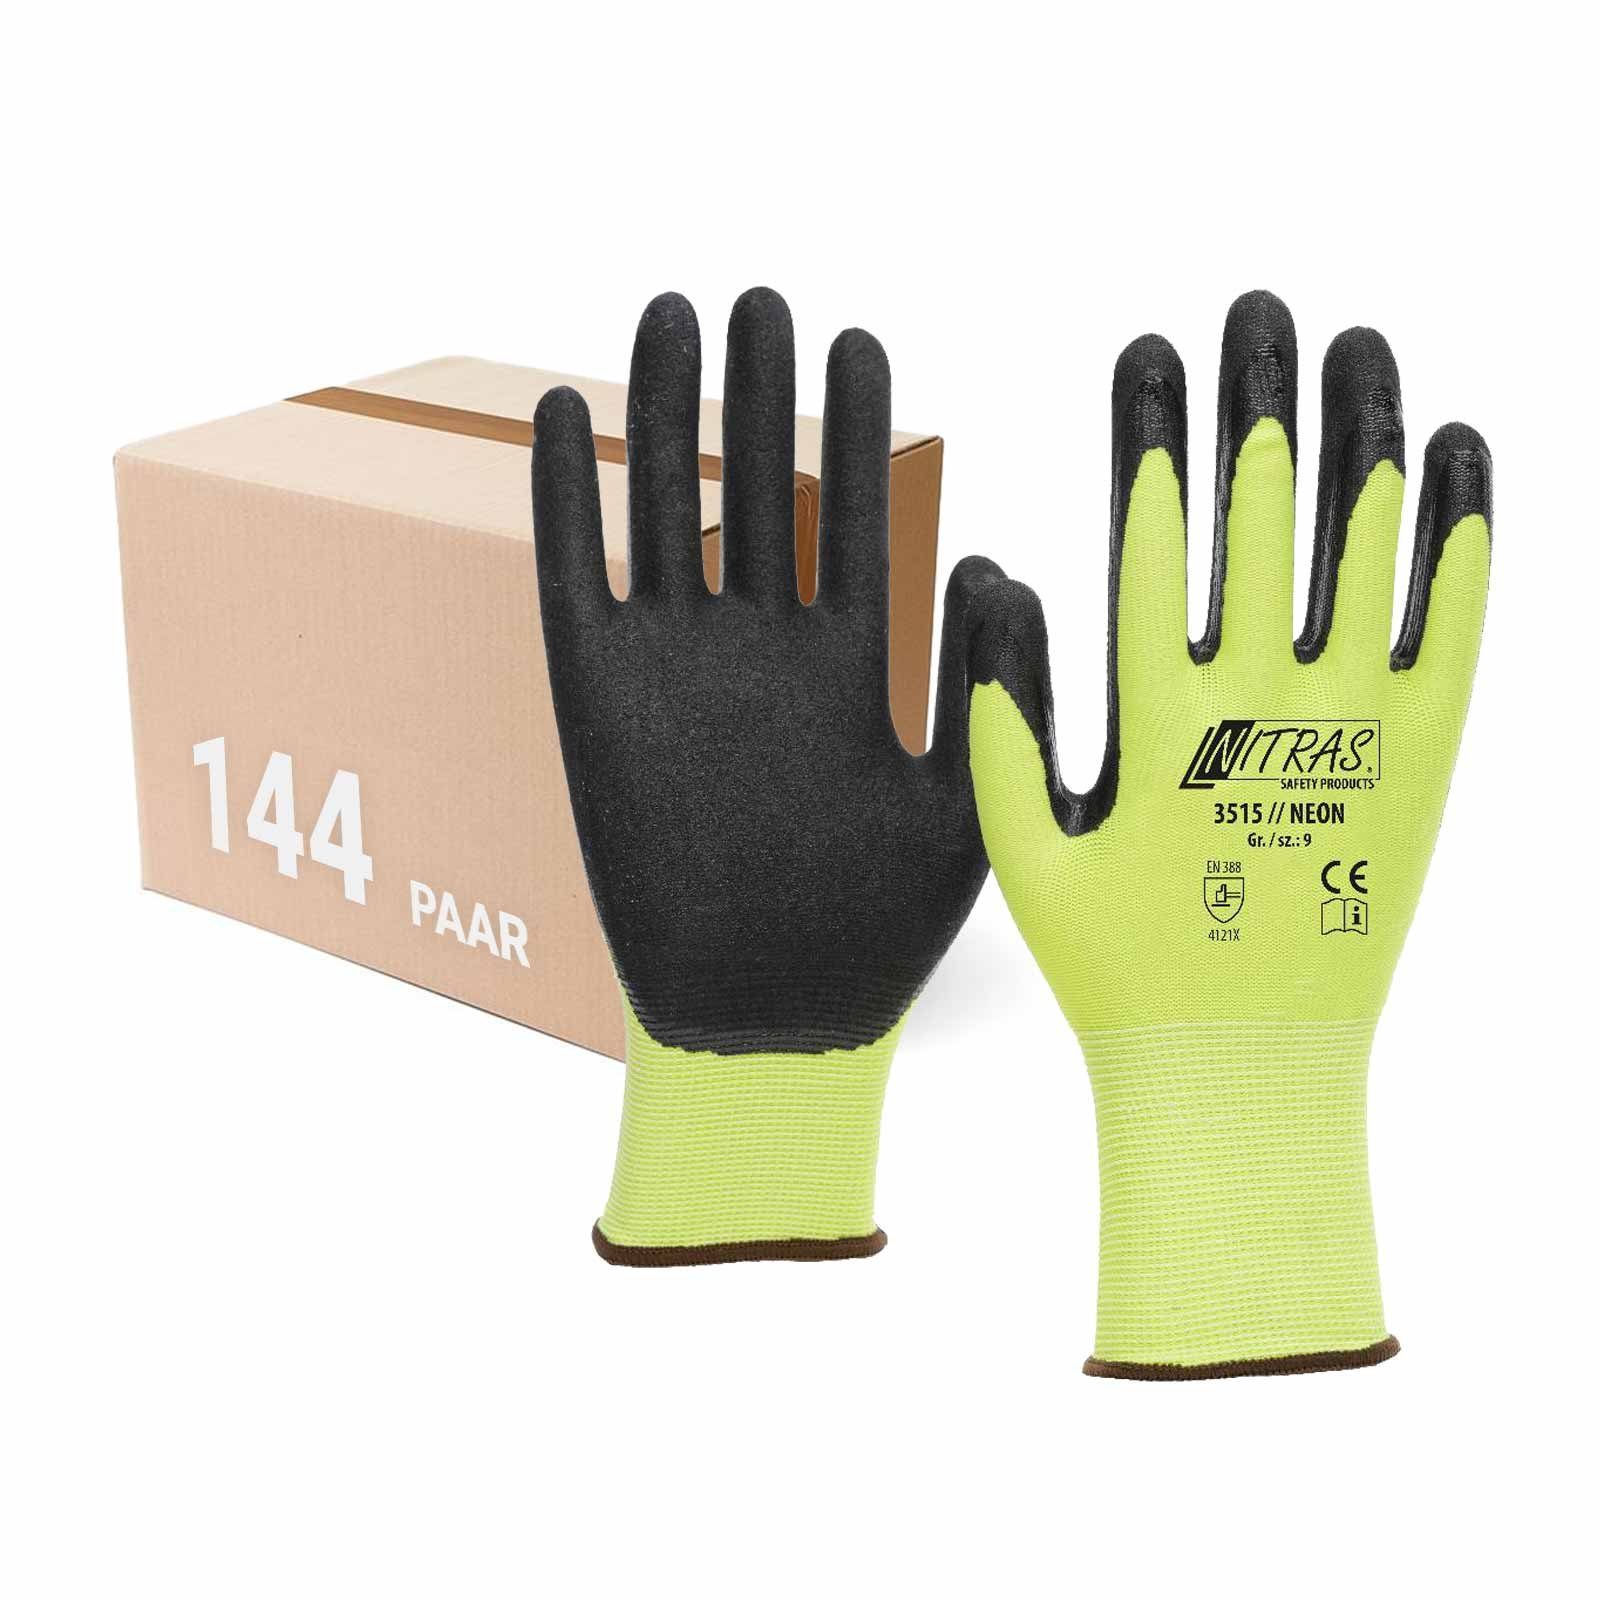 Nitras Nitril-Handschuhe NITRAS 3515 Neon Strickhandschuh mit Nitrilbeschichtung - VPE 144 Paar (Spar-Set)